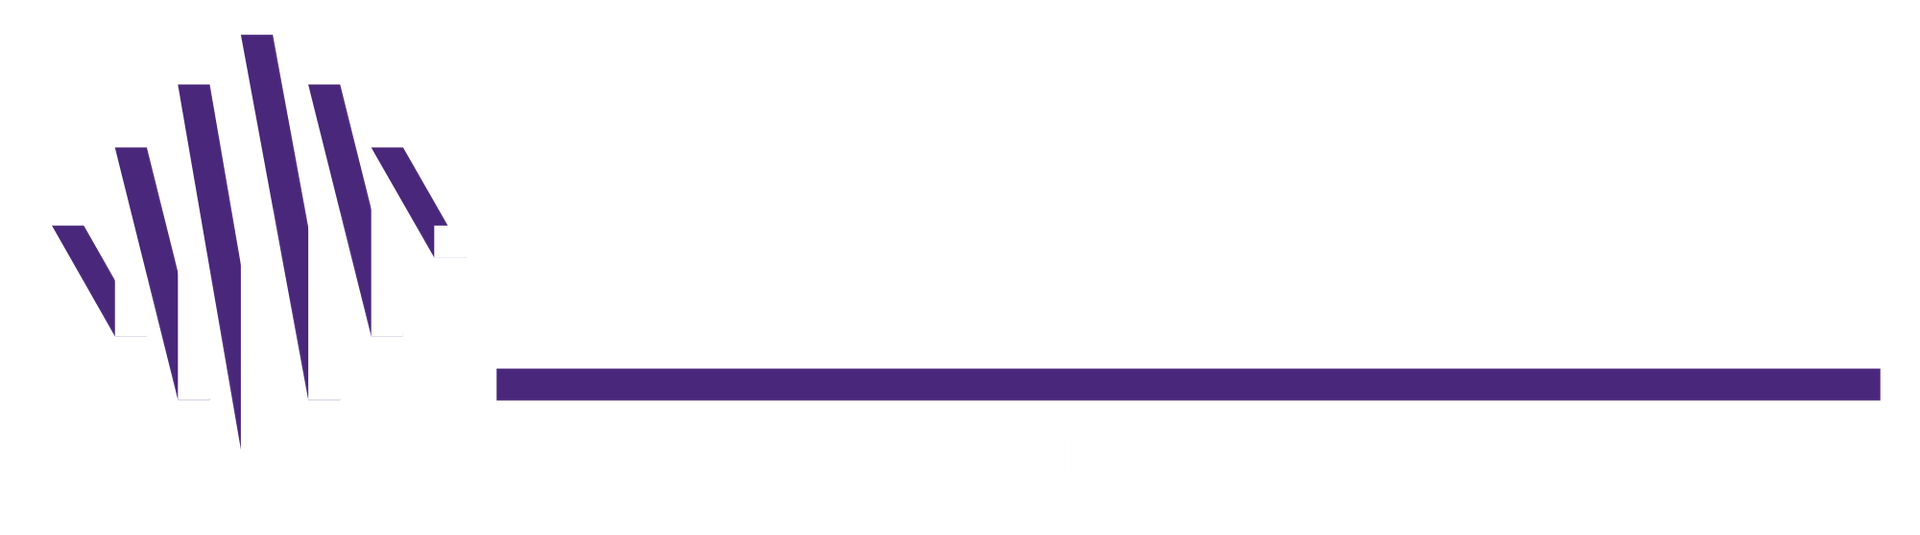 City Sound Radio Logo